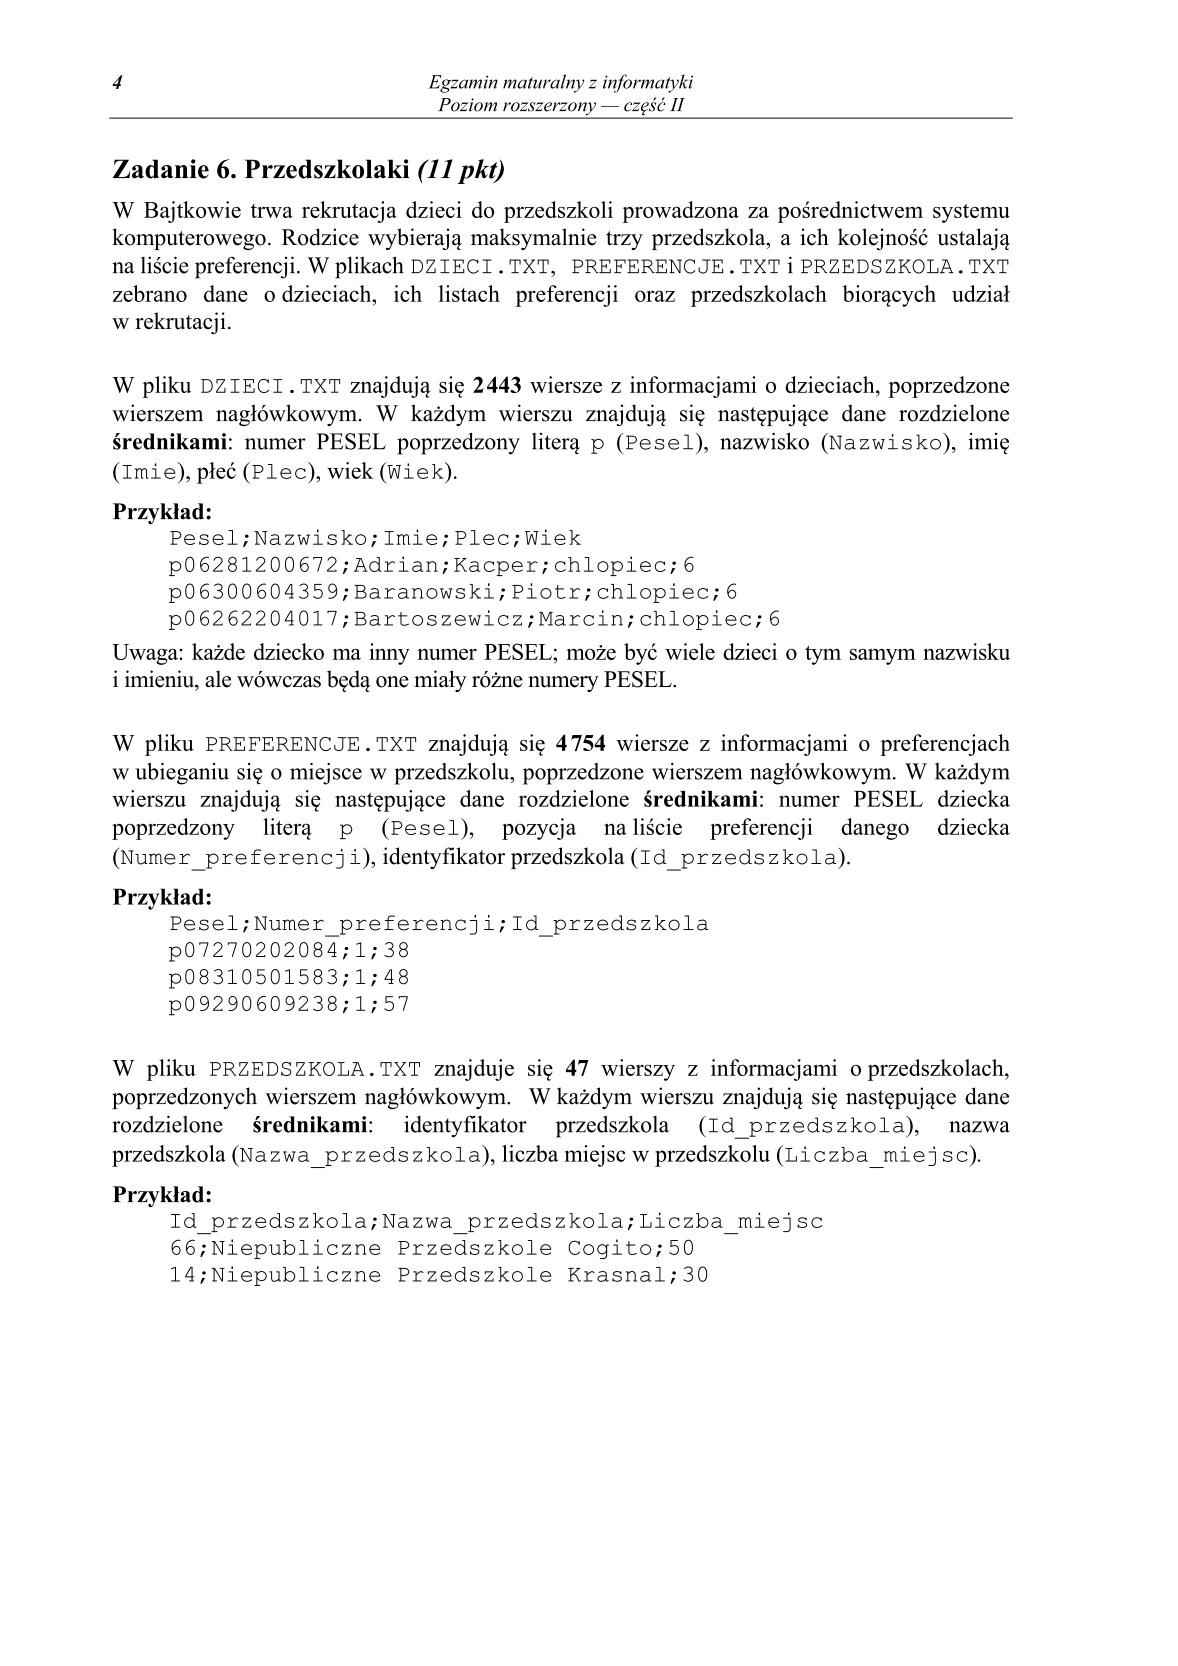 pytania-informatyka-poziom-rozszerzony-czesc-II-matura-2014-str.4